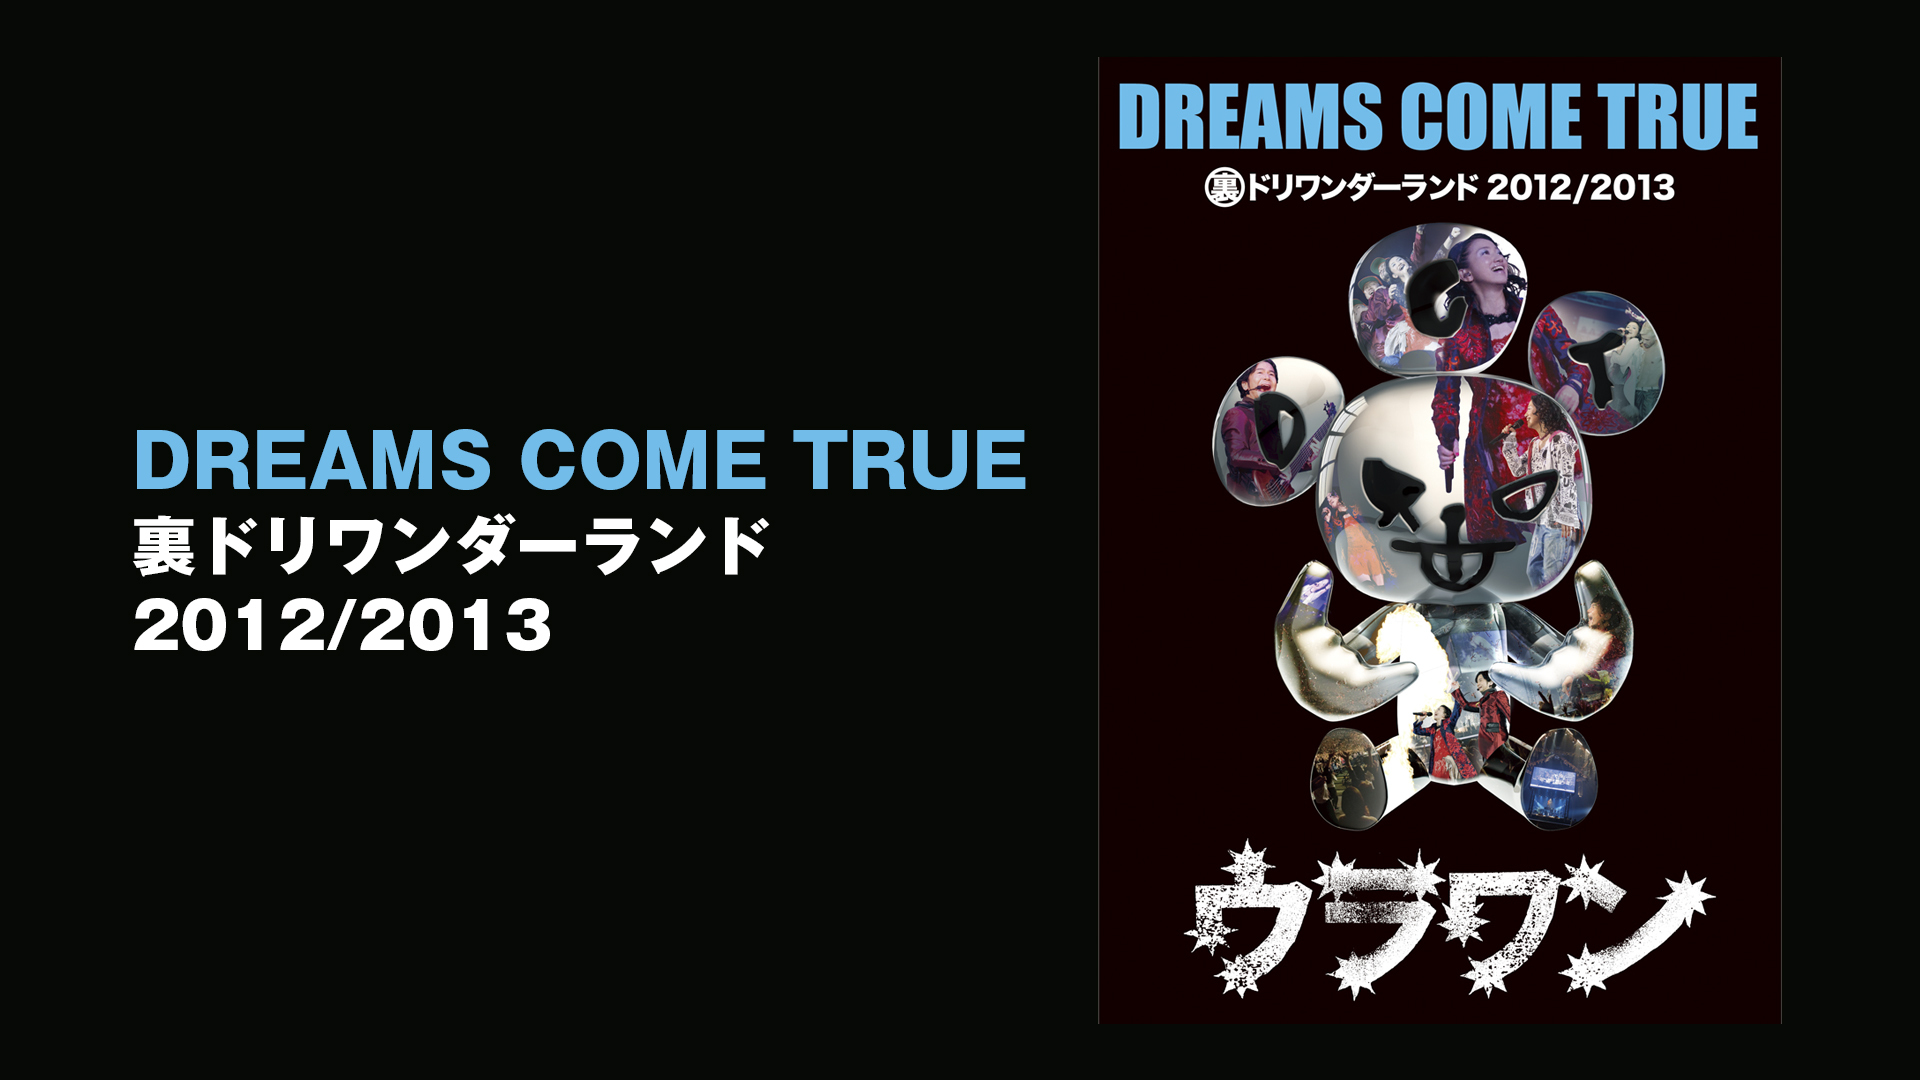 DREAMS COME TRUE 裏ドリワンダーランド 2012/2013(音楽・アイドル 